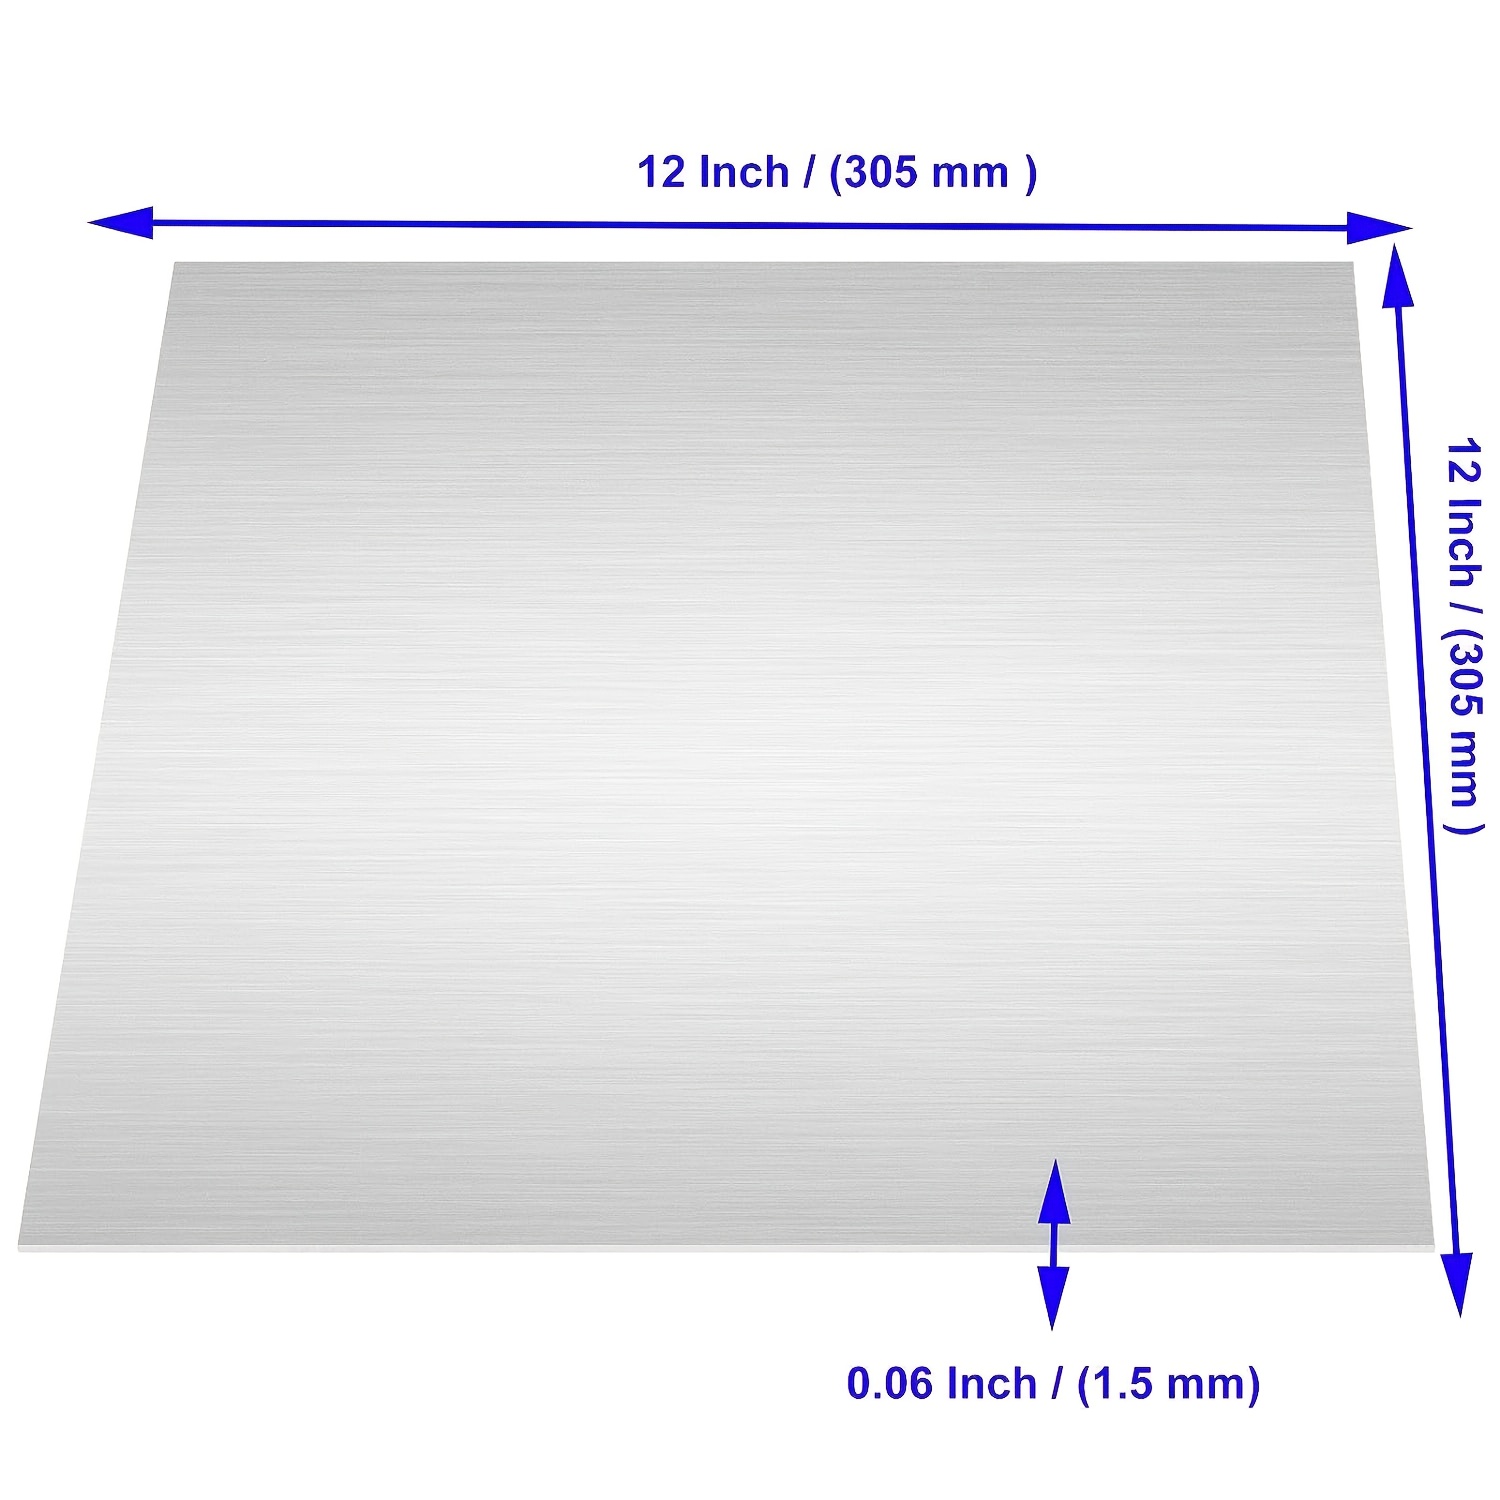  Placa de chapa metálica de aluminio .250 - 12 x 18 x 1/4 -  Panel plano de placa plana.. Aleación de aluminio 6061 T651 es una aleación  tratable térmicamente de media